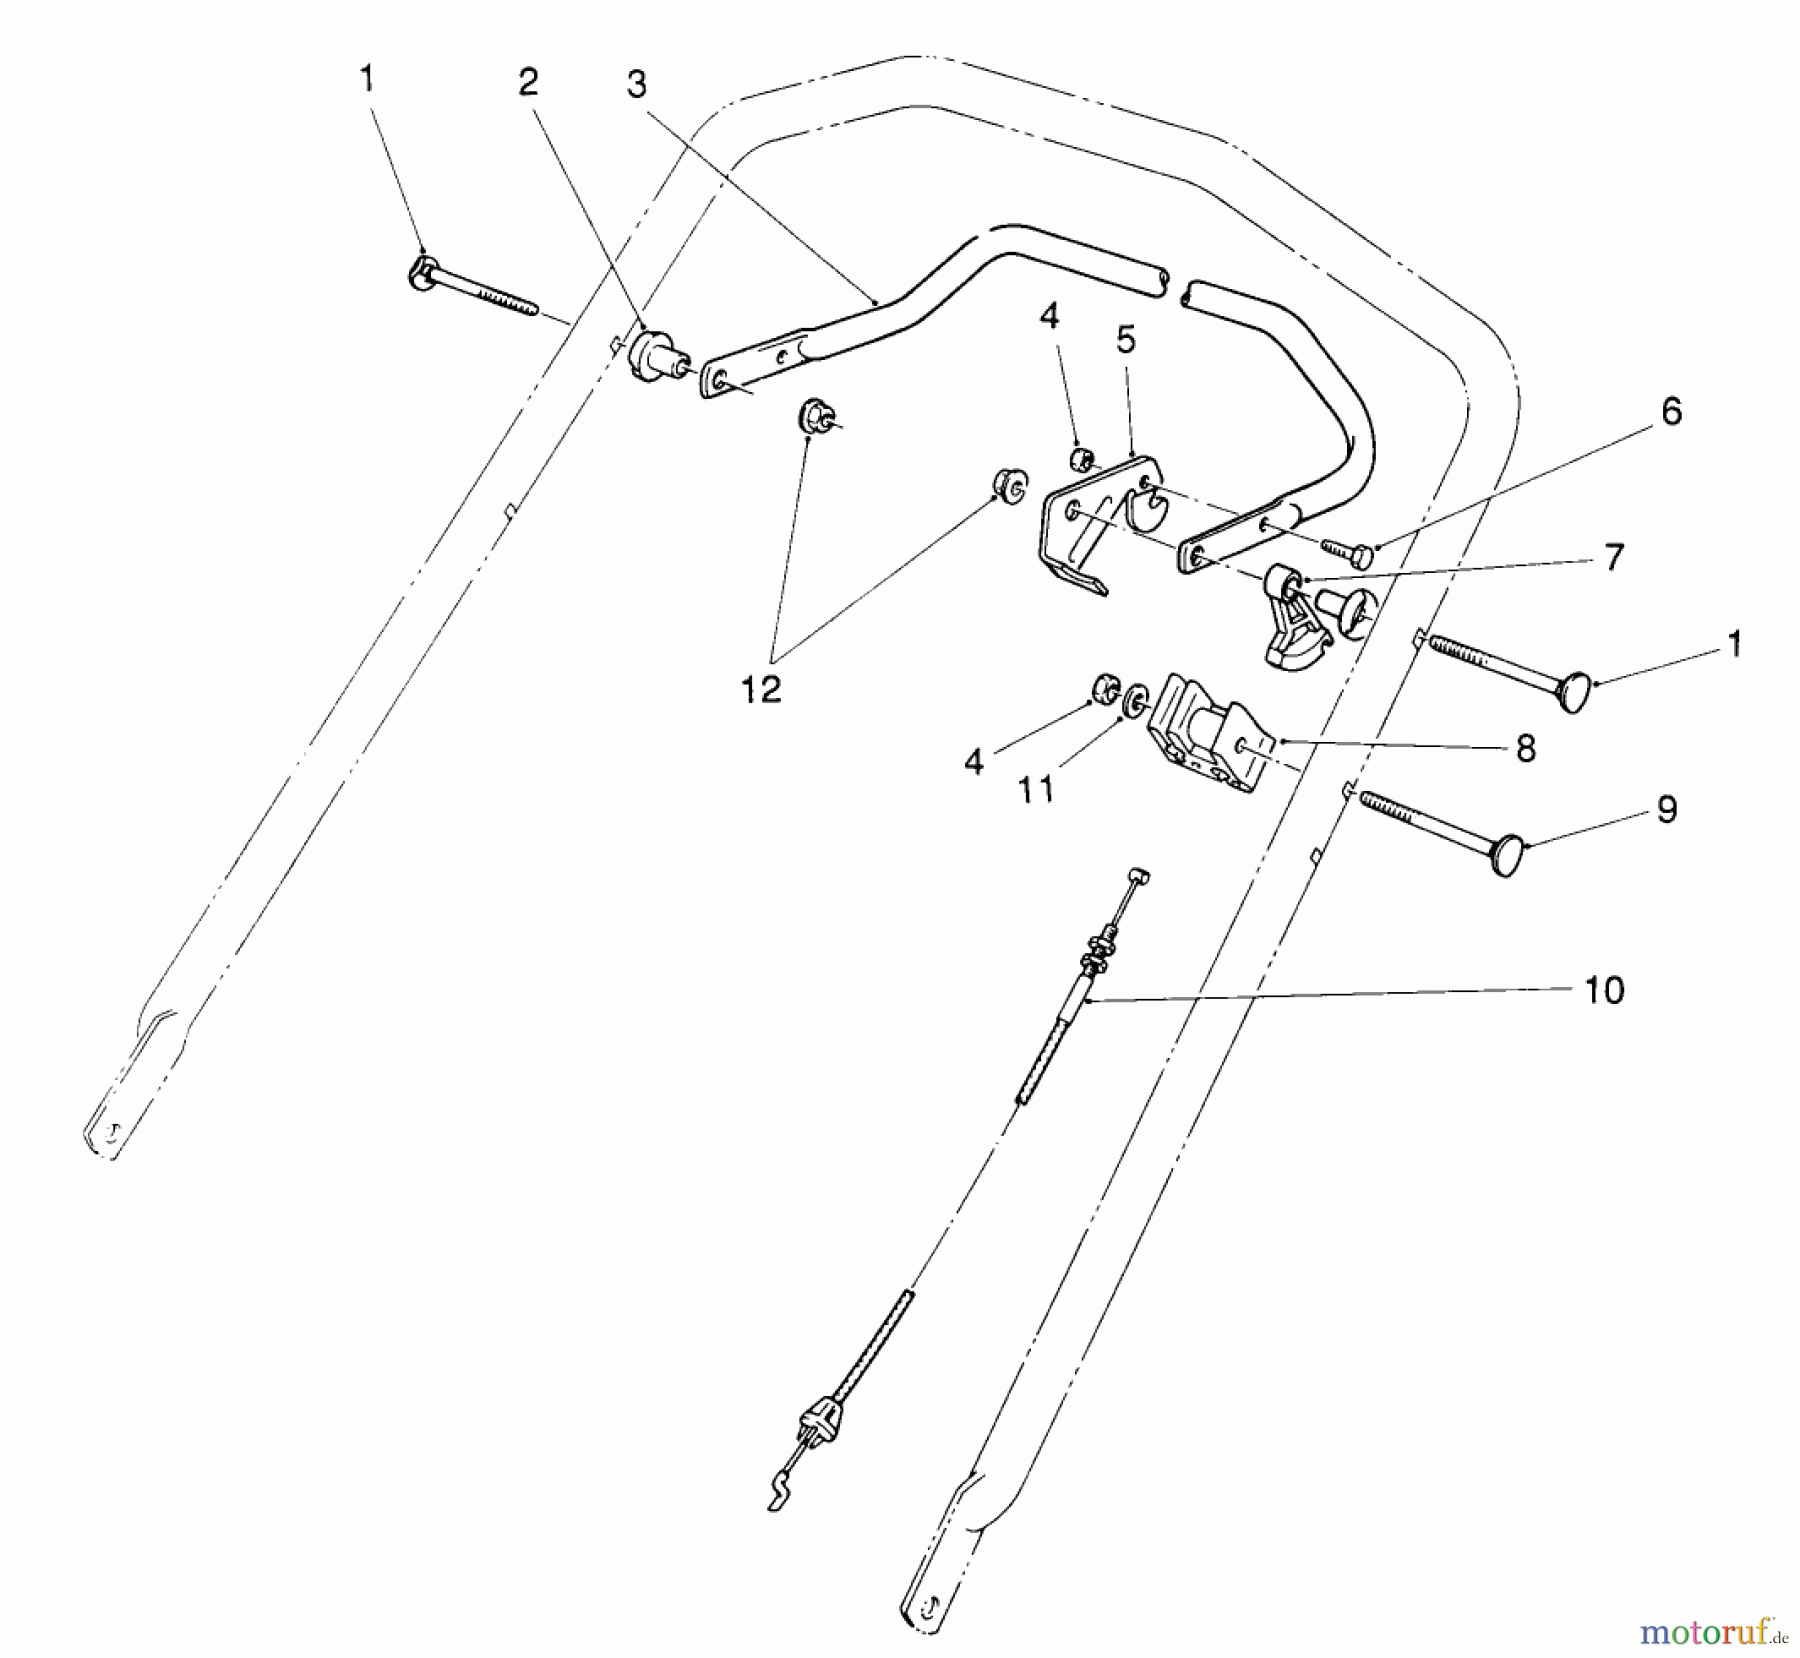  Toro Neu Mowers, Walk-Behind Seite 2 26620BG - Toro Lawnmower, 1991 (1000001-1999999) TRACTION CONTROL ASSEMBLY